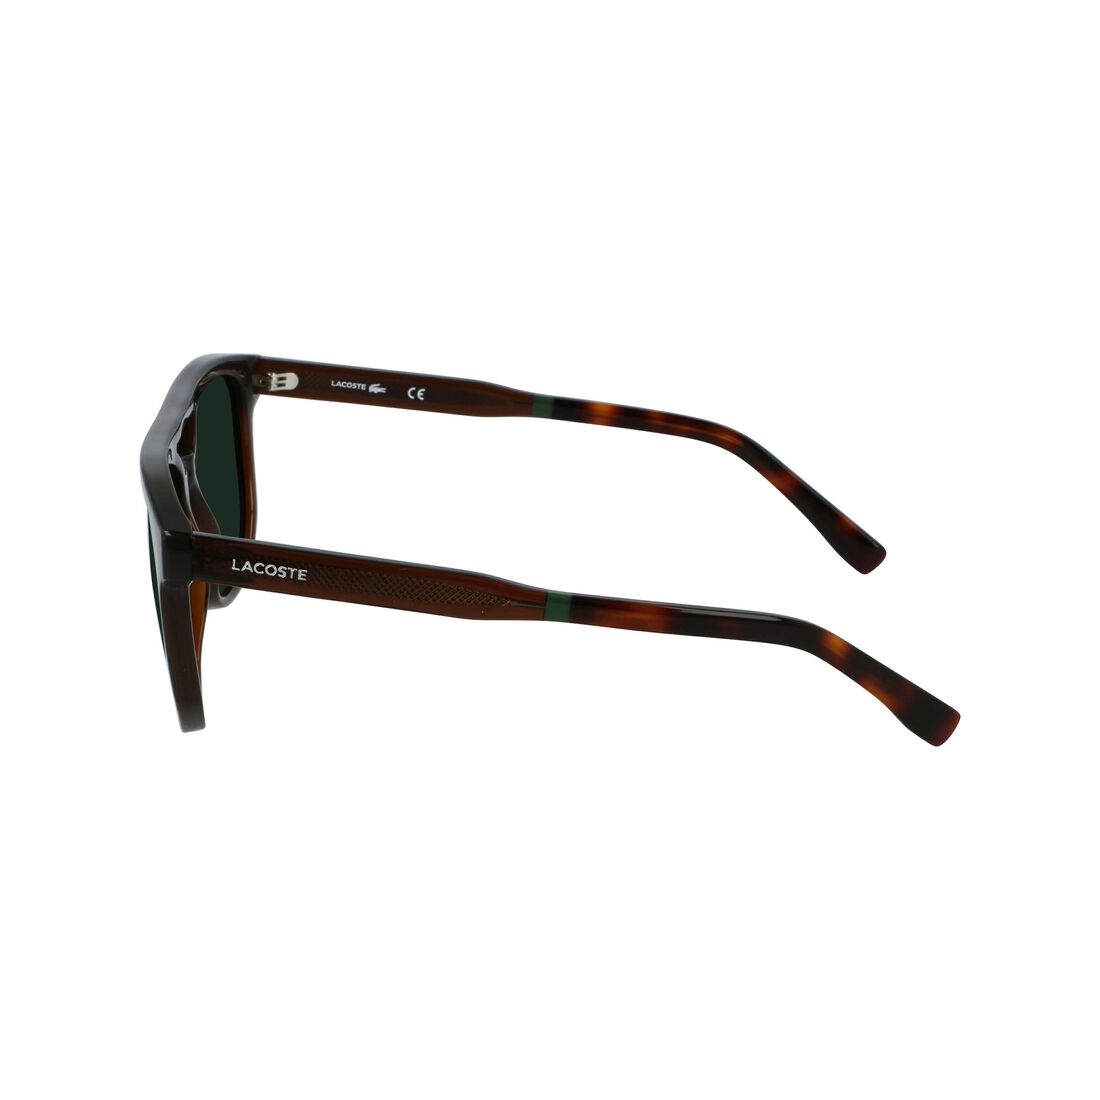 Lacoste Injected Sonnenbrille Herren Braun | EIJR-21840